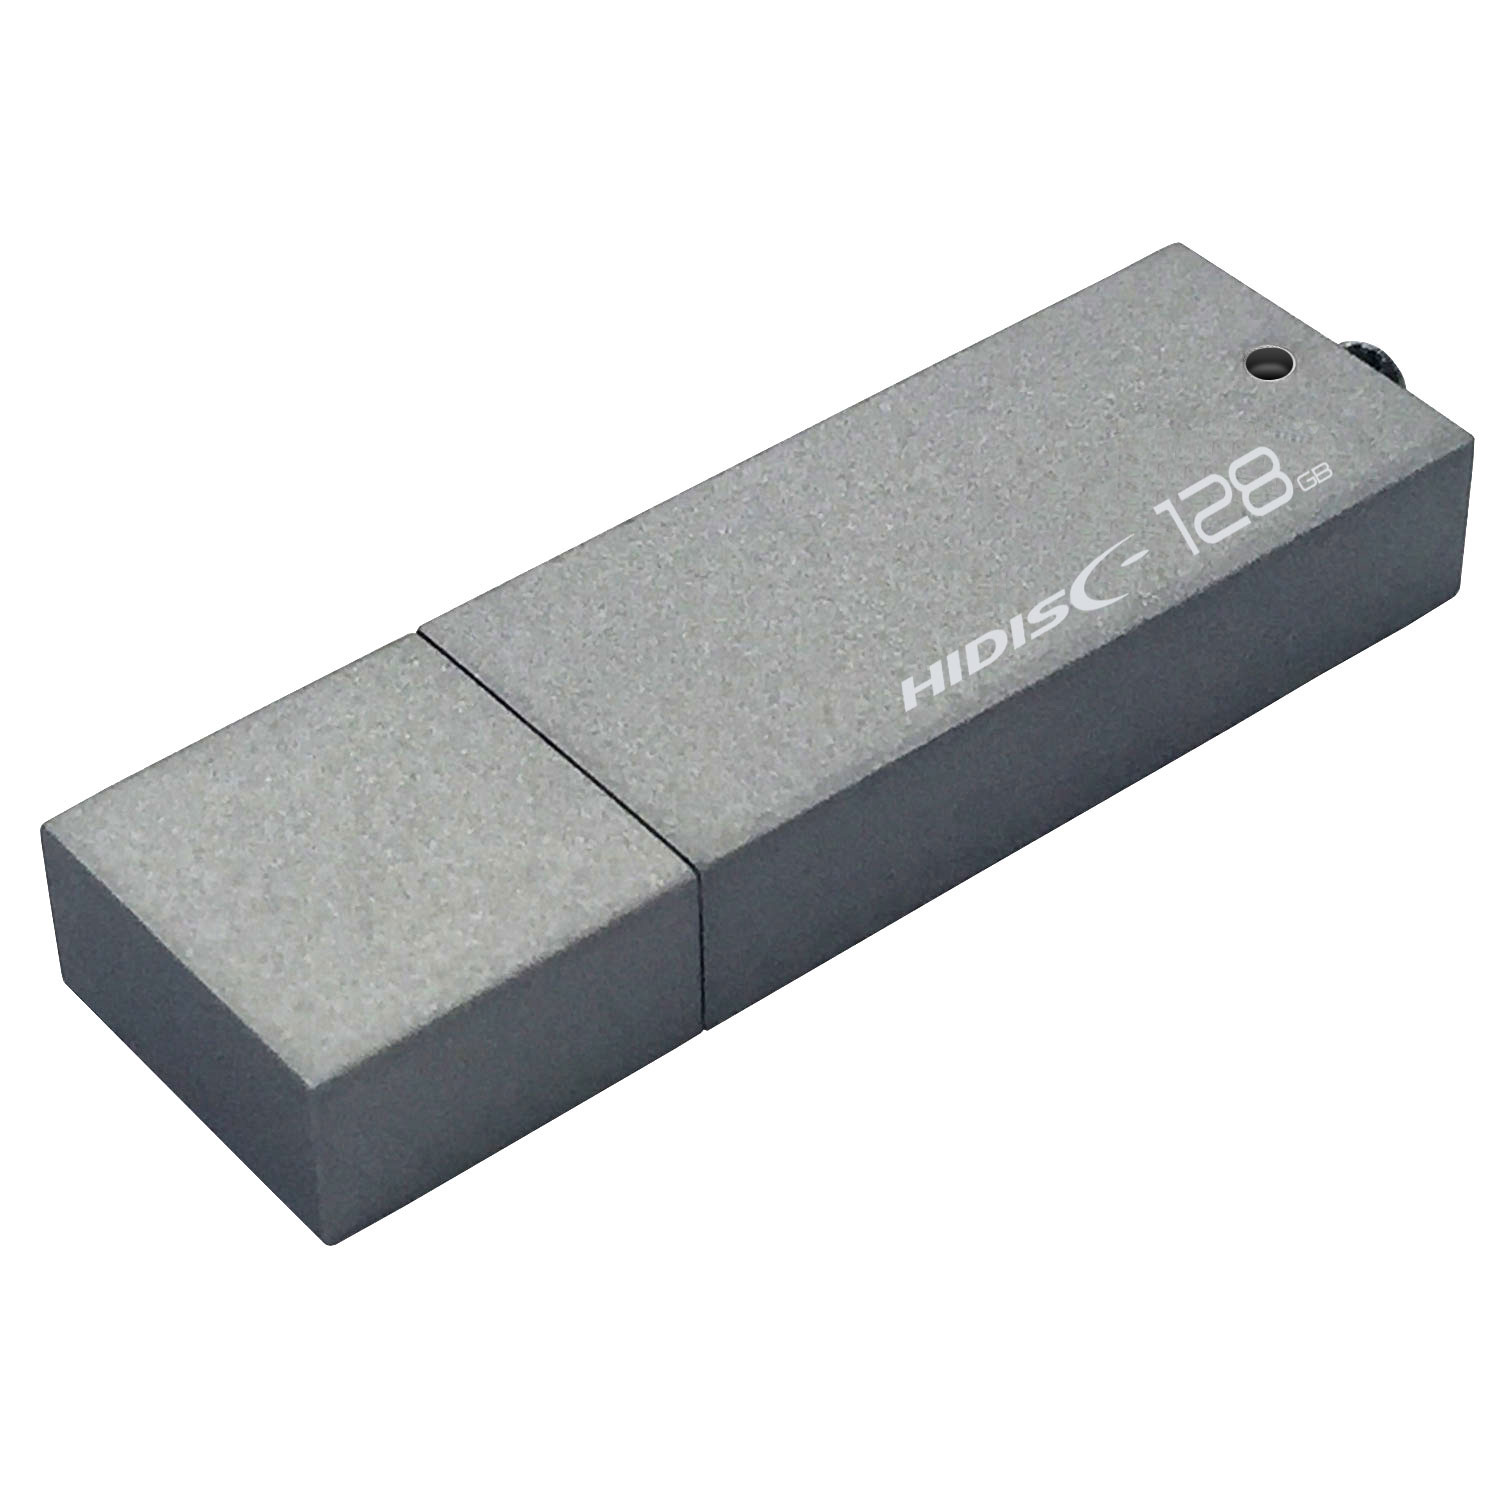 高速転送 HIDISC USB 3.0 フラッシュドライブ 128GB シルバー キャップ式